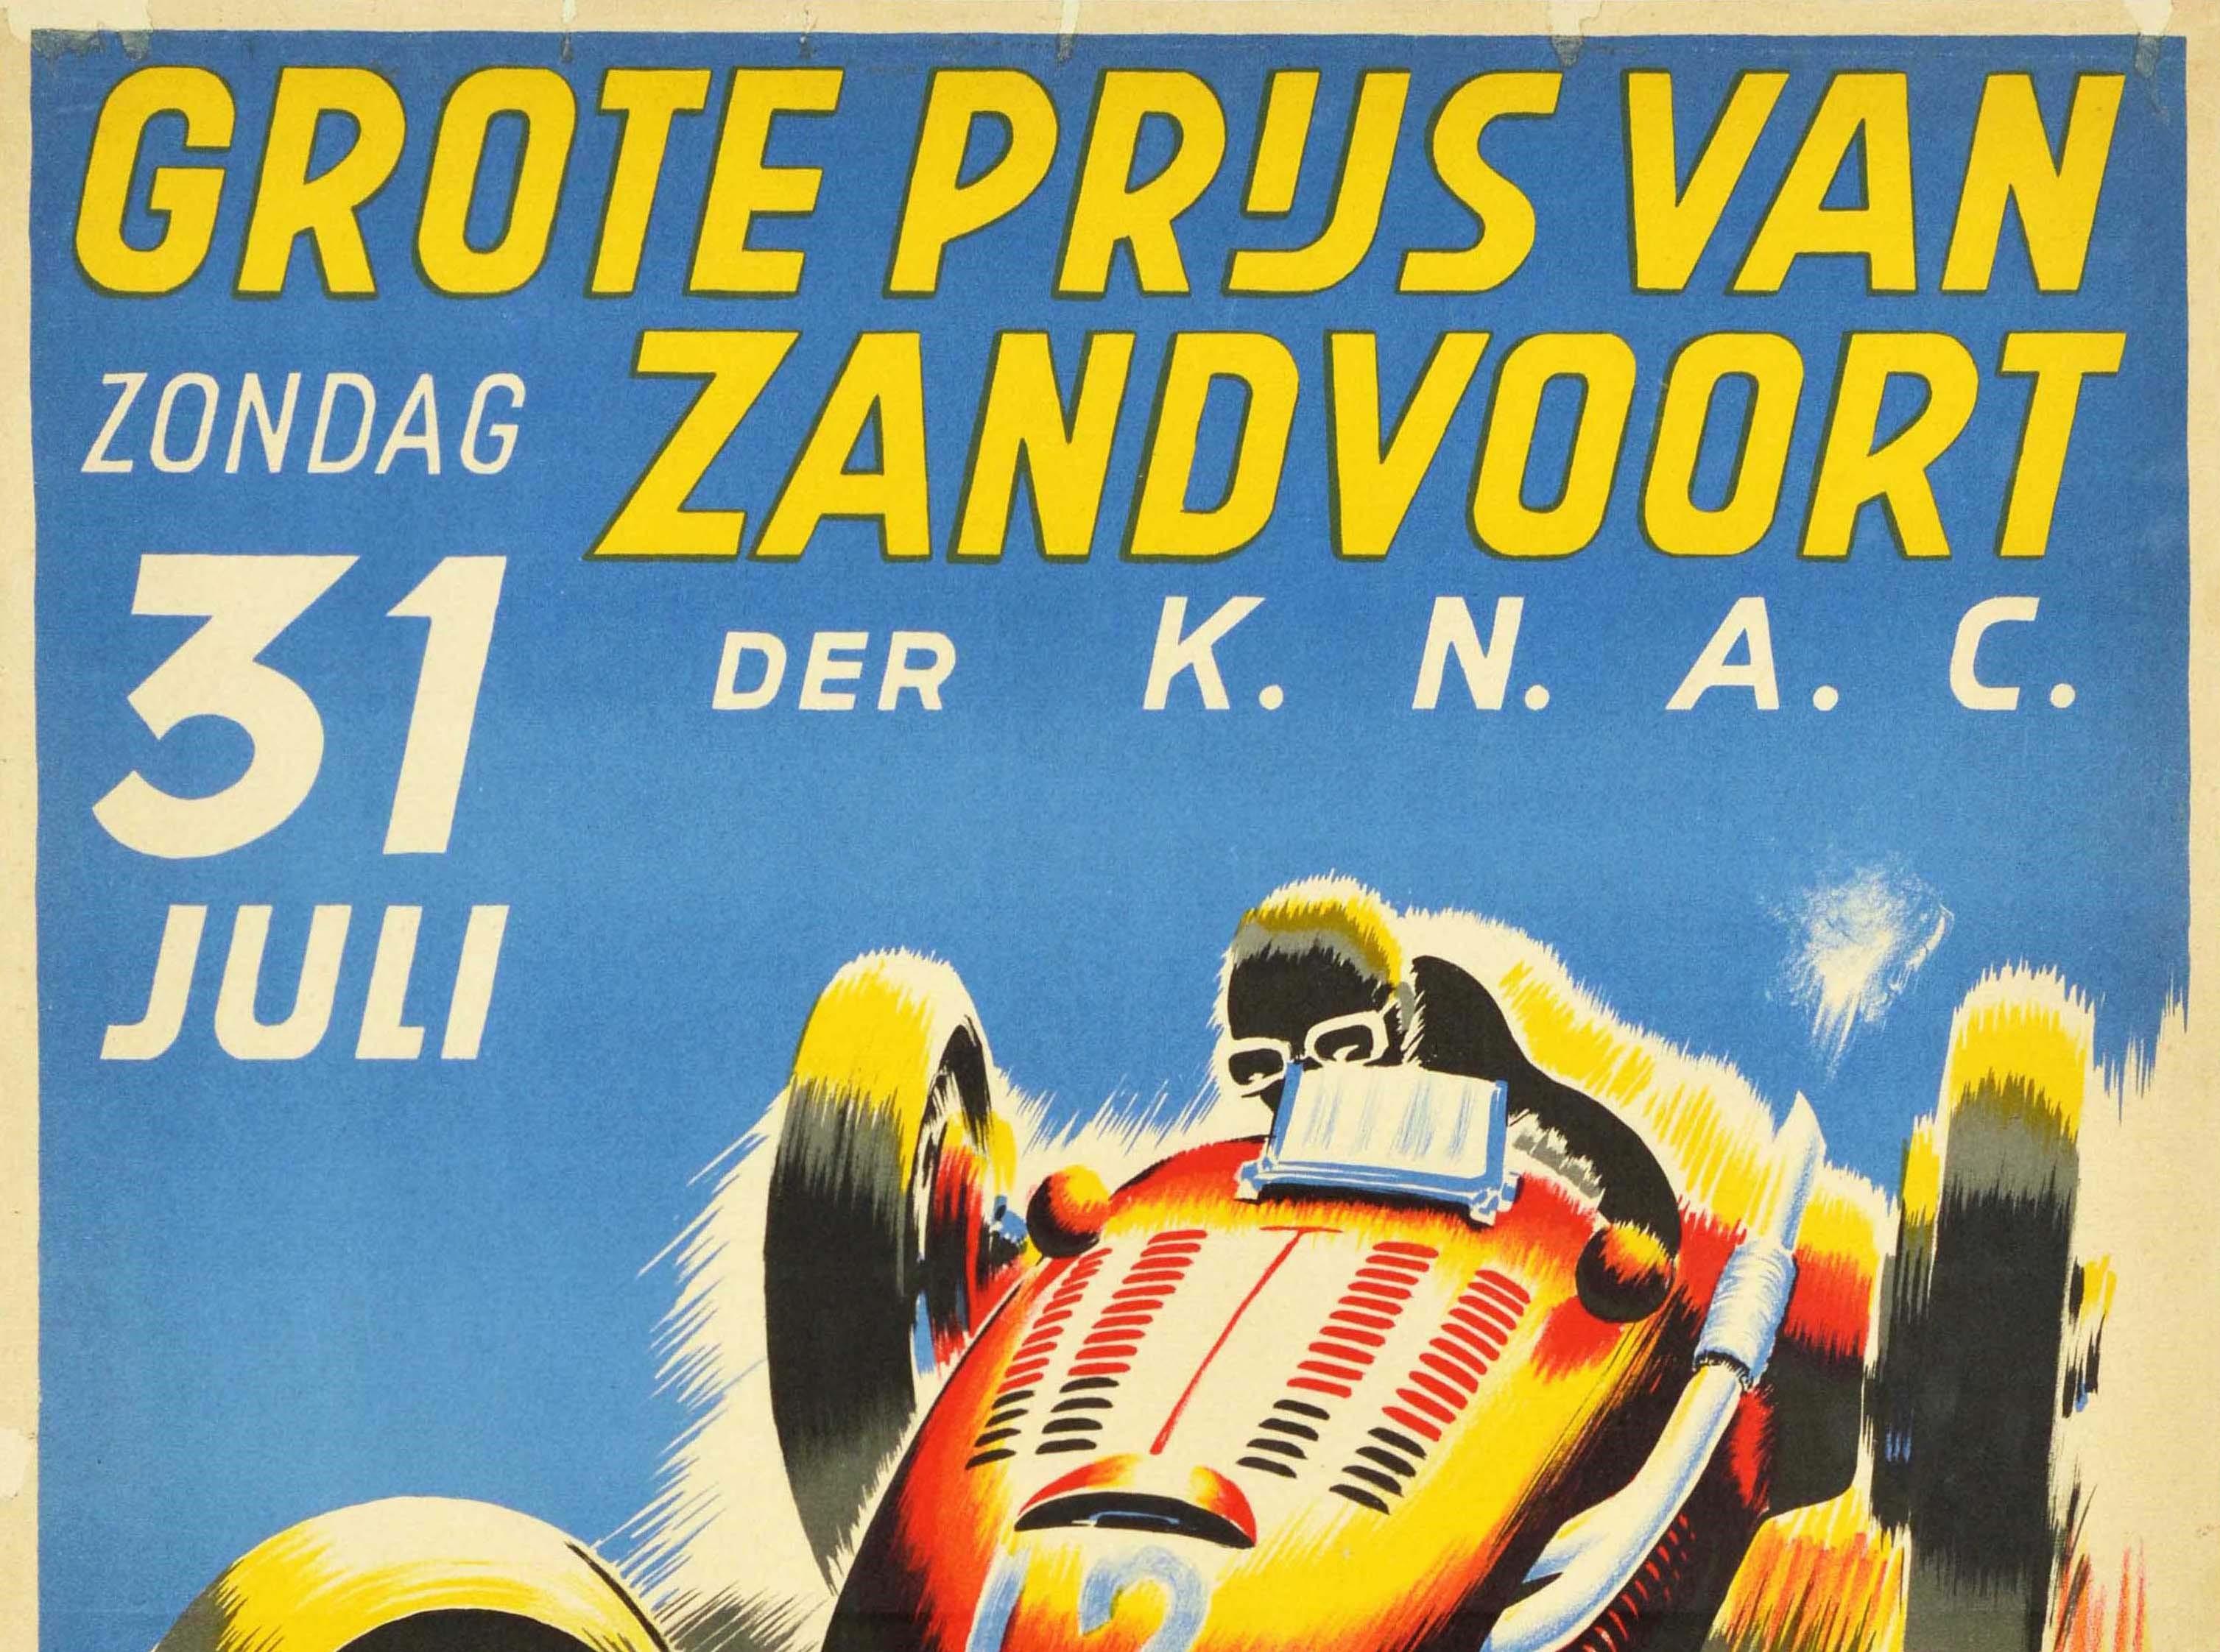 Affiche originale de sport automobile pour le Grote Prijs van Zandvoort der KNAC / Grand Prix de Zandvoort du 31 juillet 1949. Elle présente un dessin dynamique représentant une voiture classique filant à toute allure vers le spectateur, avec le